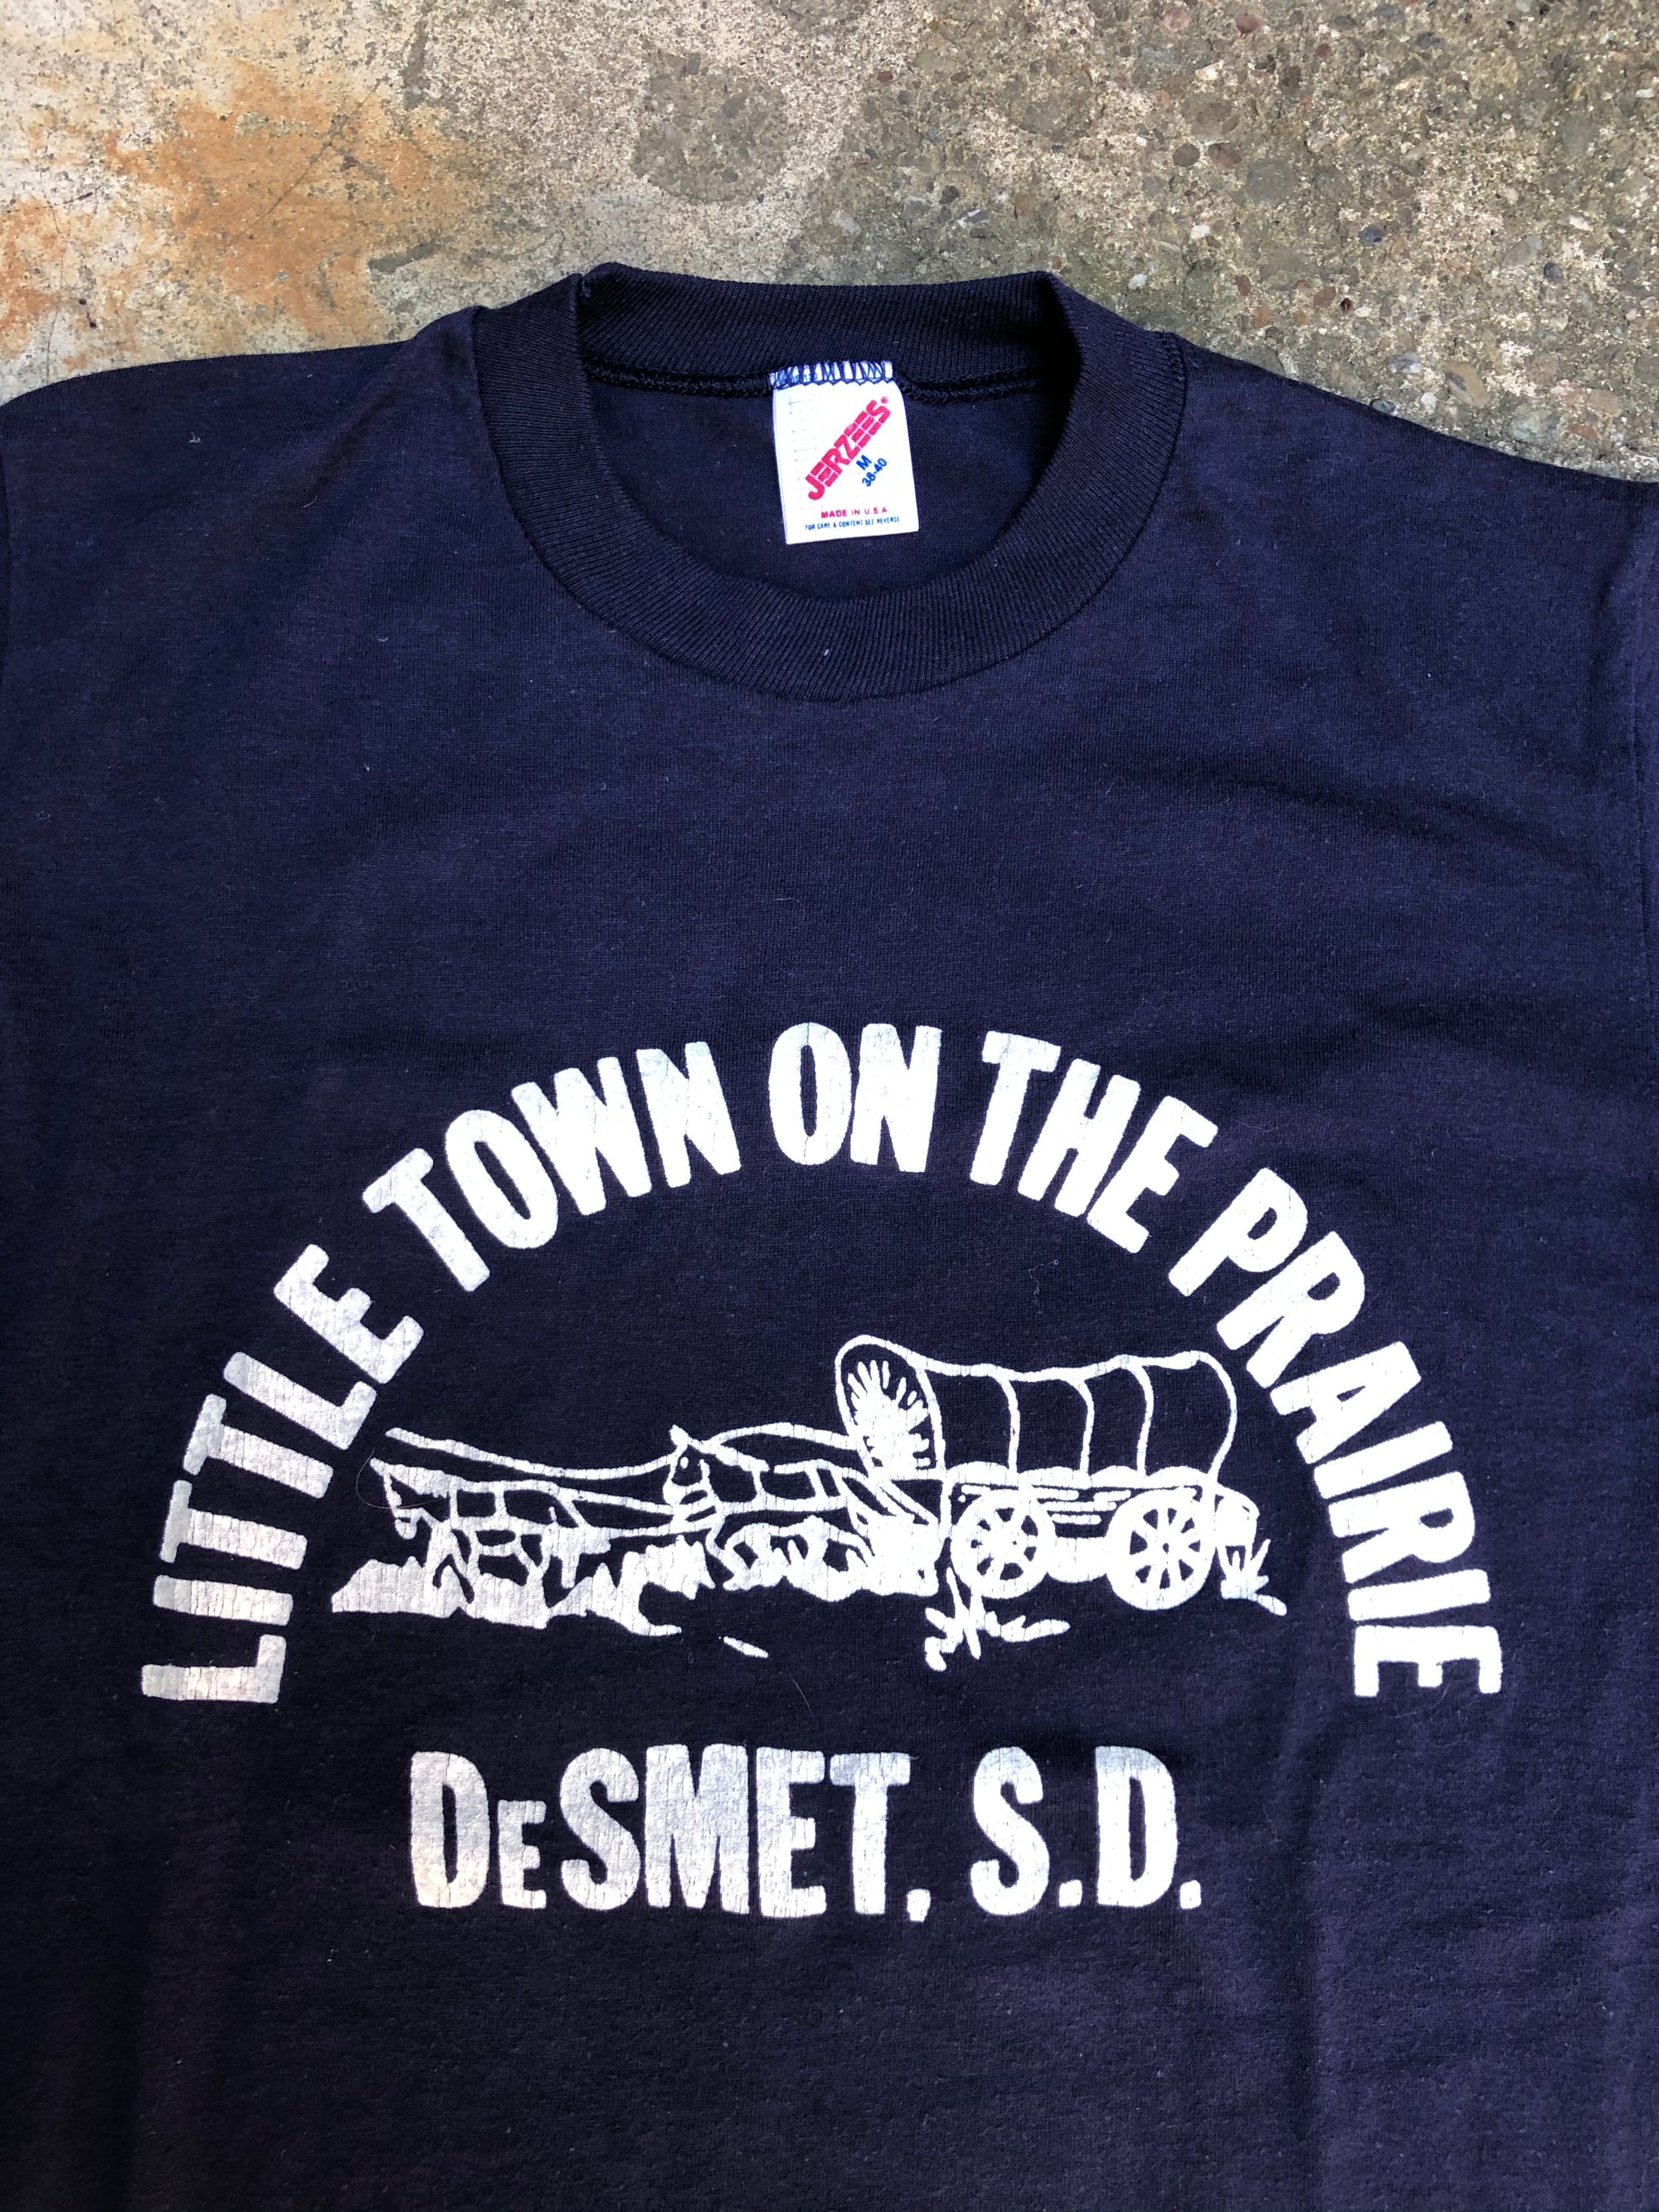 1980s Navy “Little Town on the Prairie” Tee